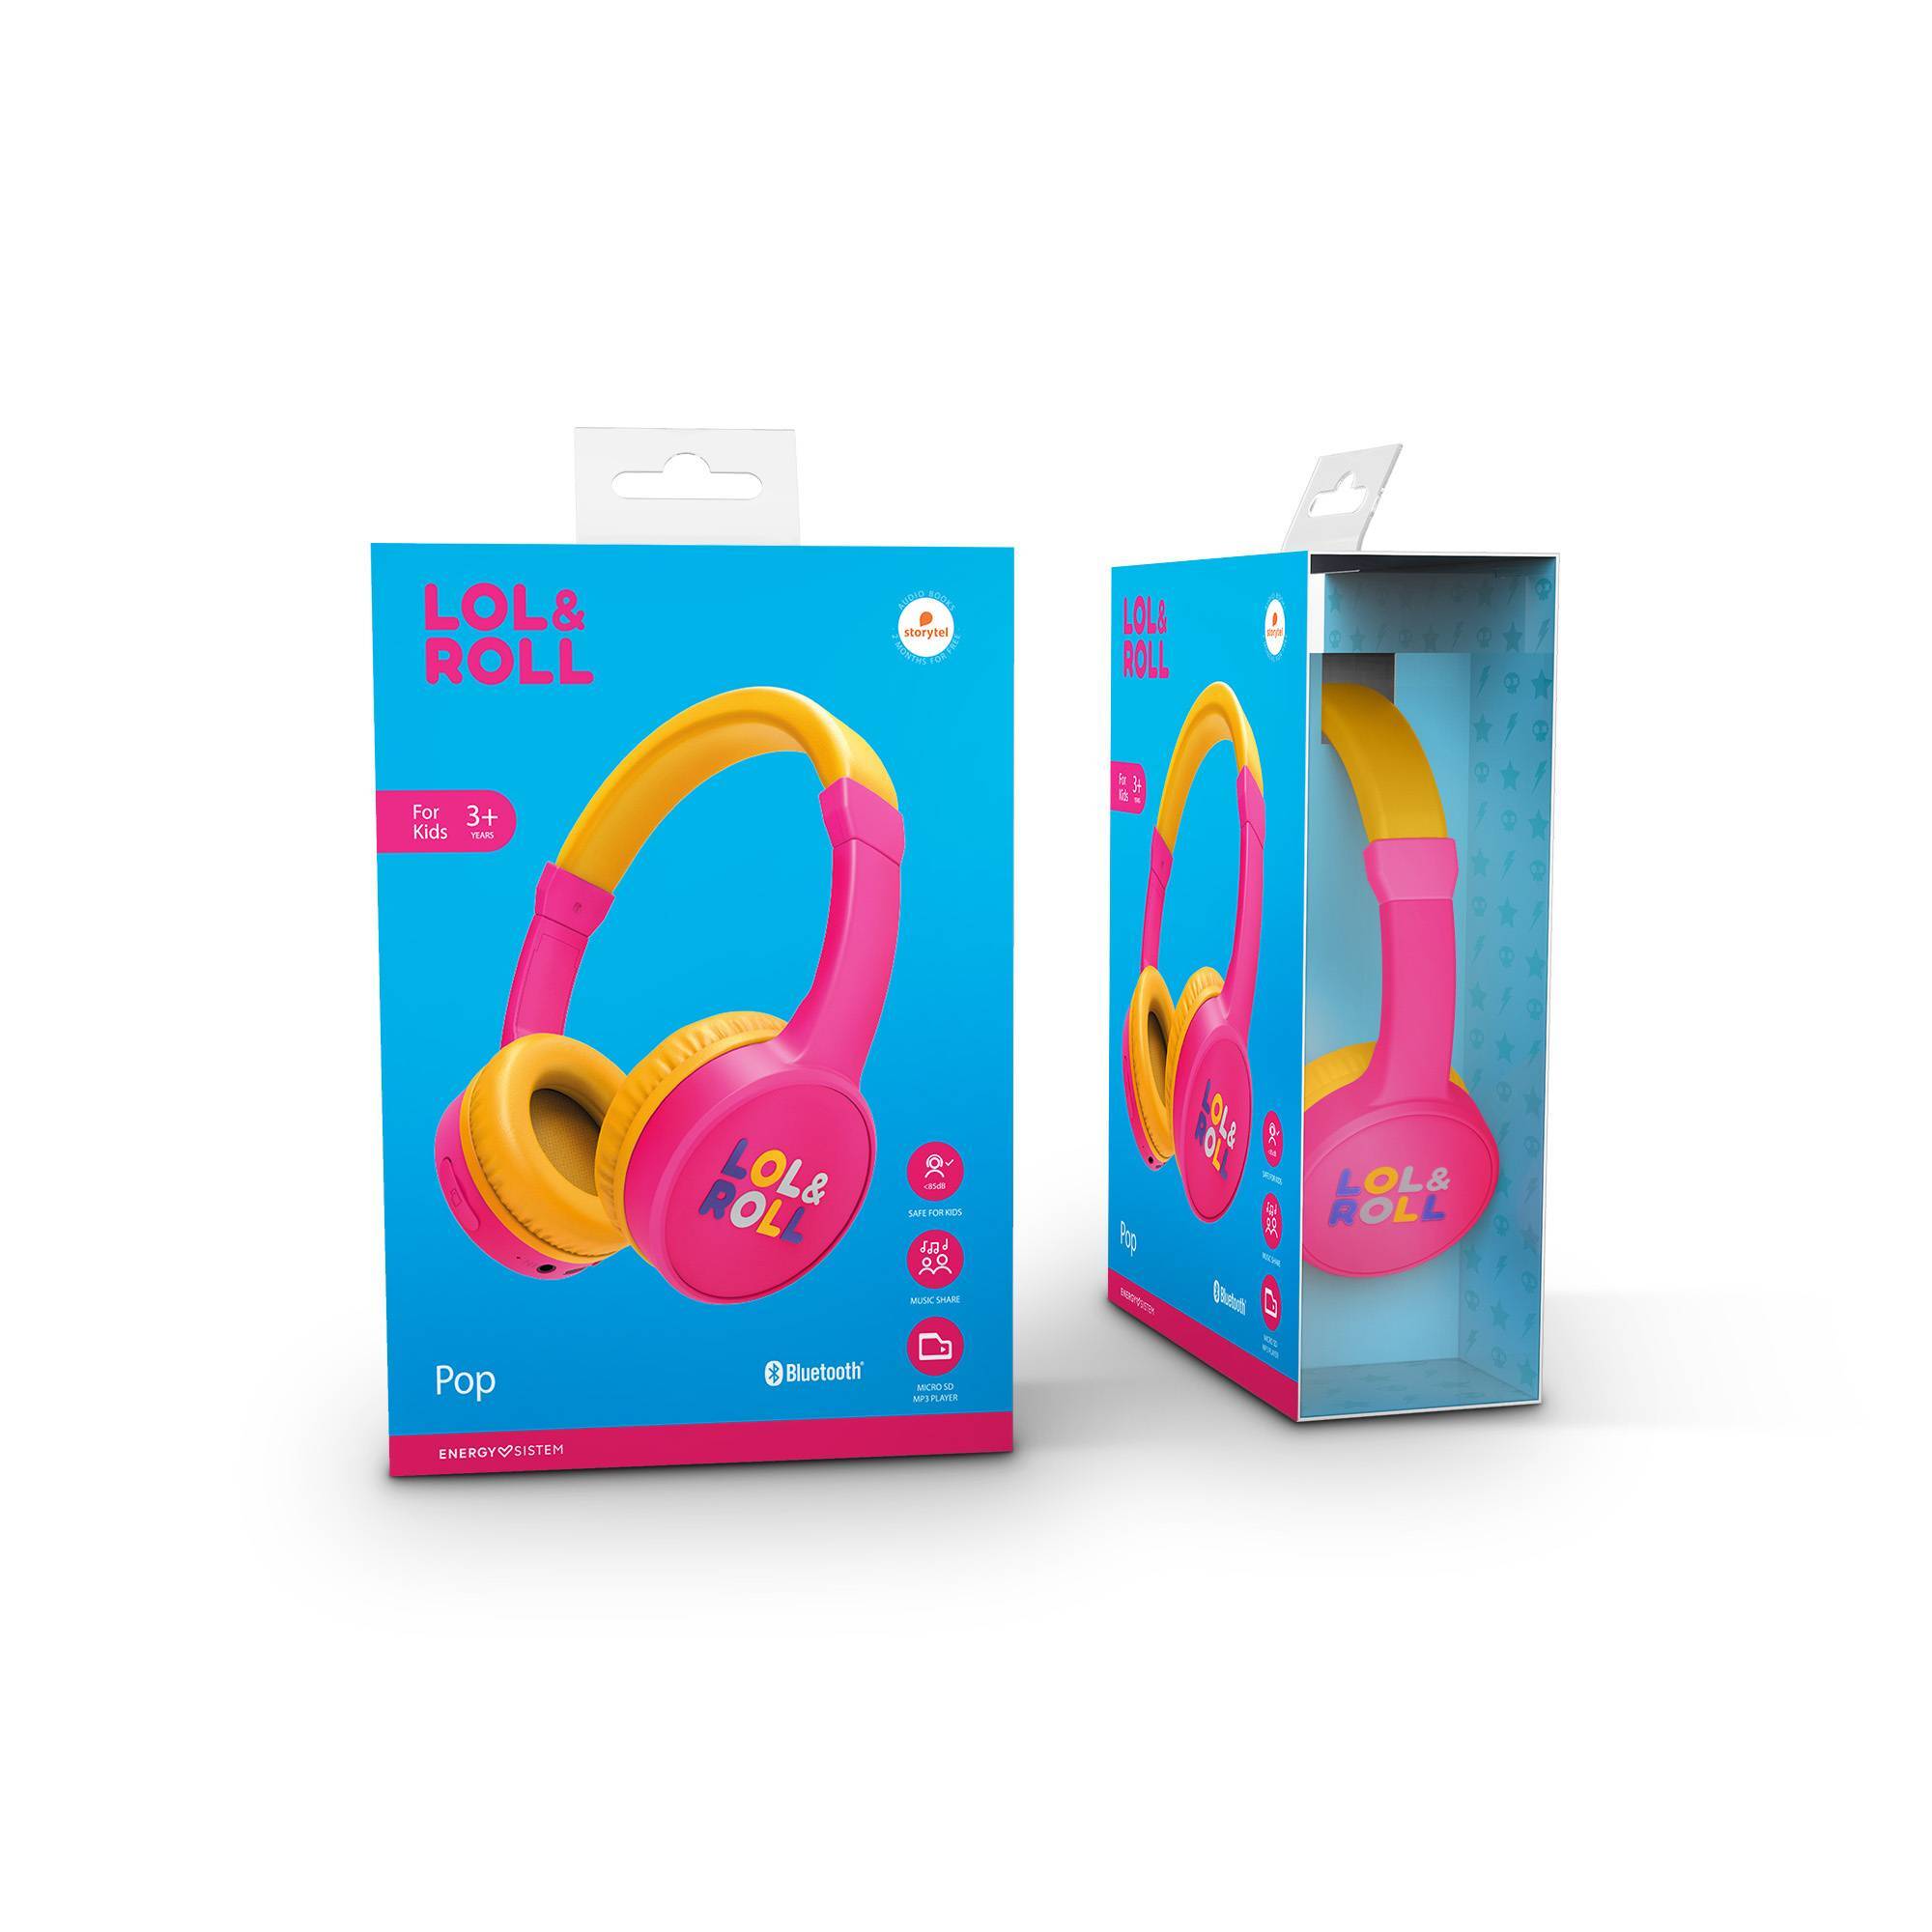 Pink Lol&Roll Pop Kids Bluetooth Headphones' packaging